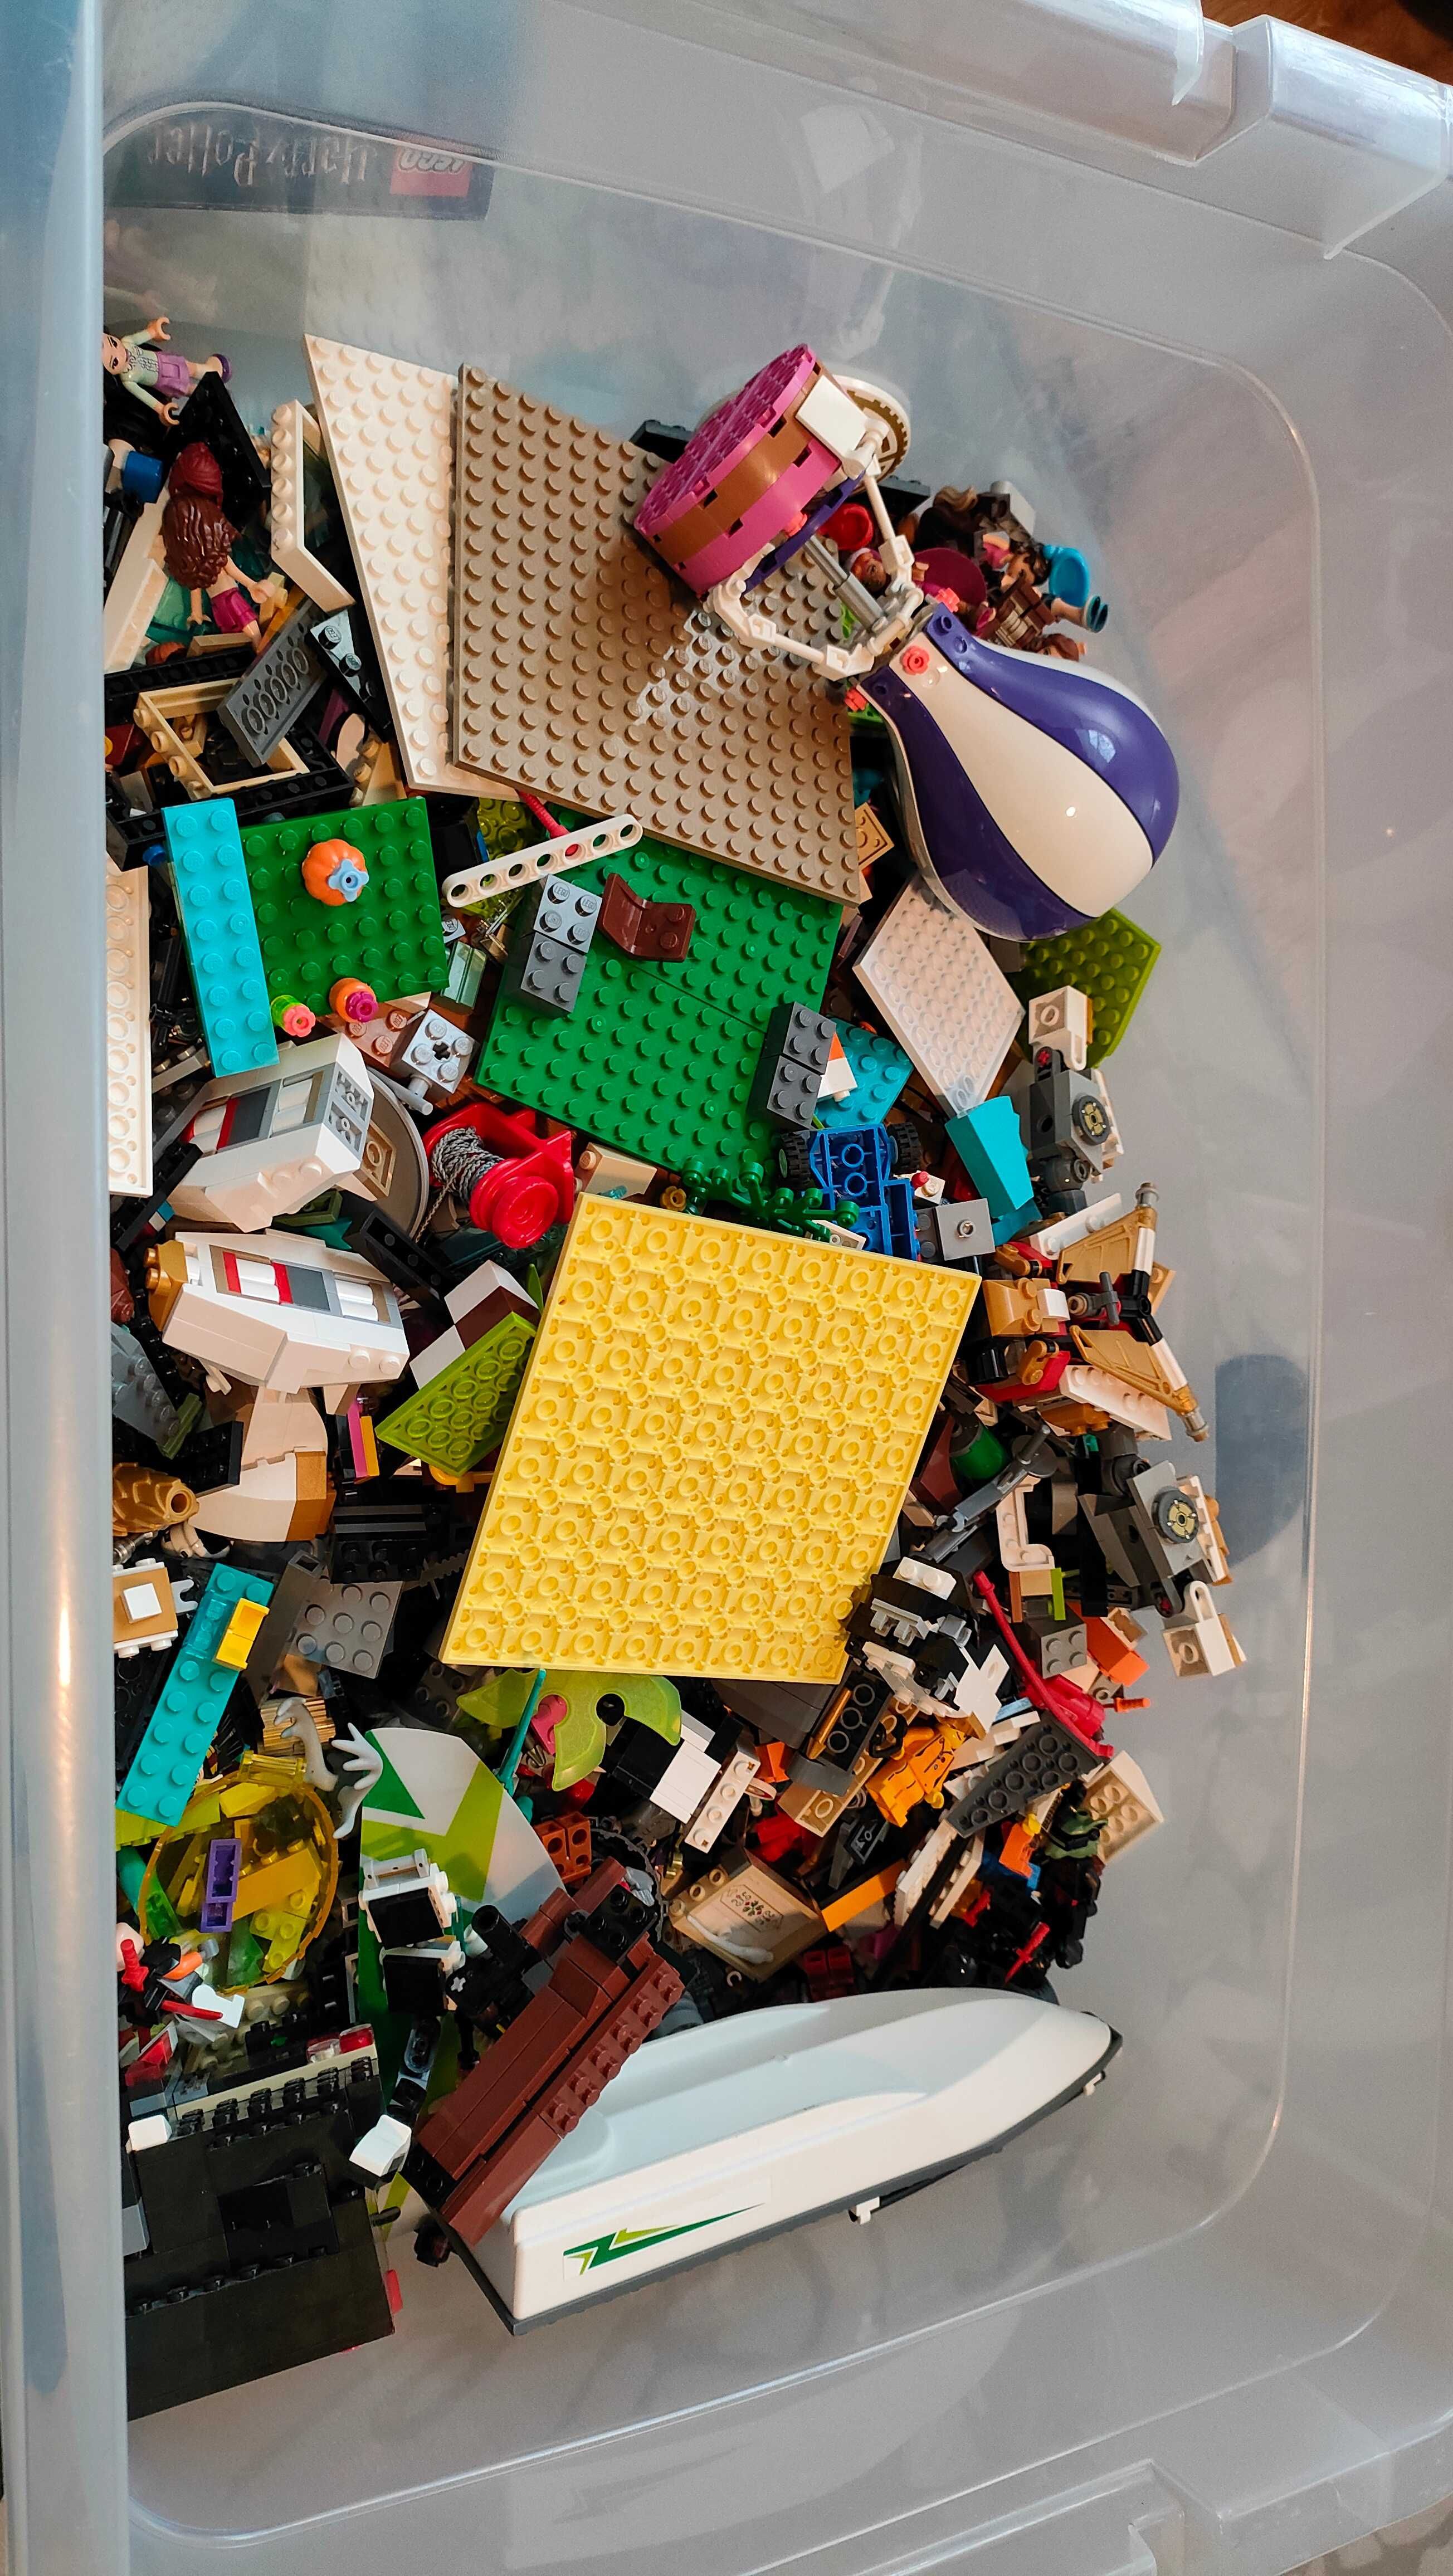 LEGO - 11 kg, 85 postaci + 44 zwierzęta + mix zestawów